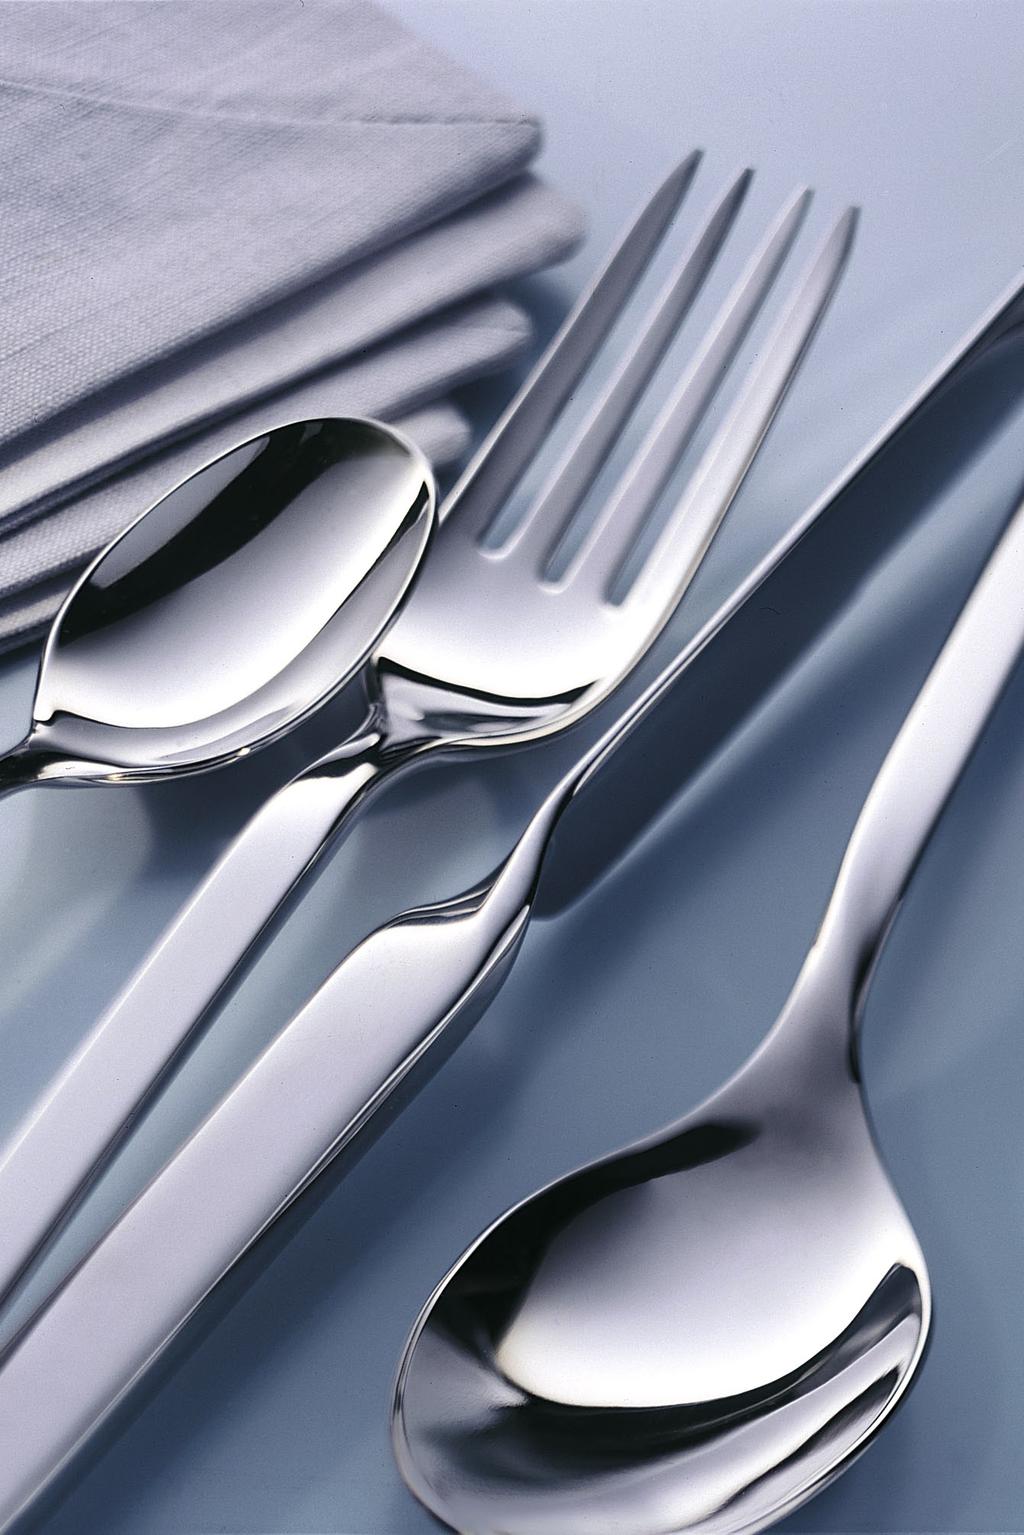 NewWave Trendy cutlery in an a ttractive wave design cool, clear, distinctive. Des couverts tendance aux lignes ondulées très flatteuses: un design cool, précis, inimitable.